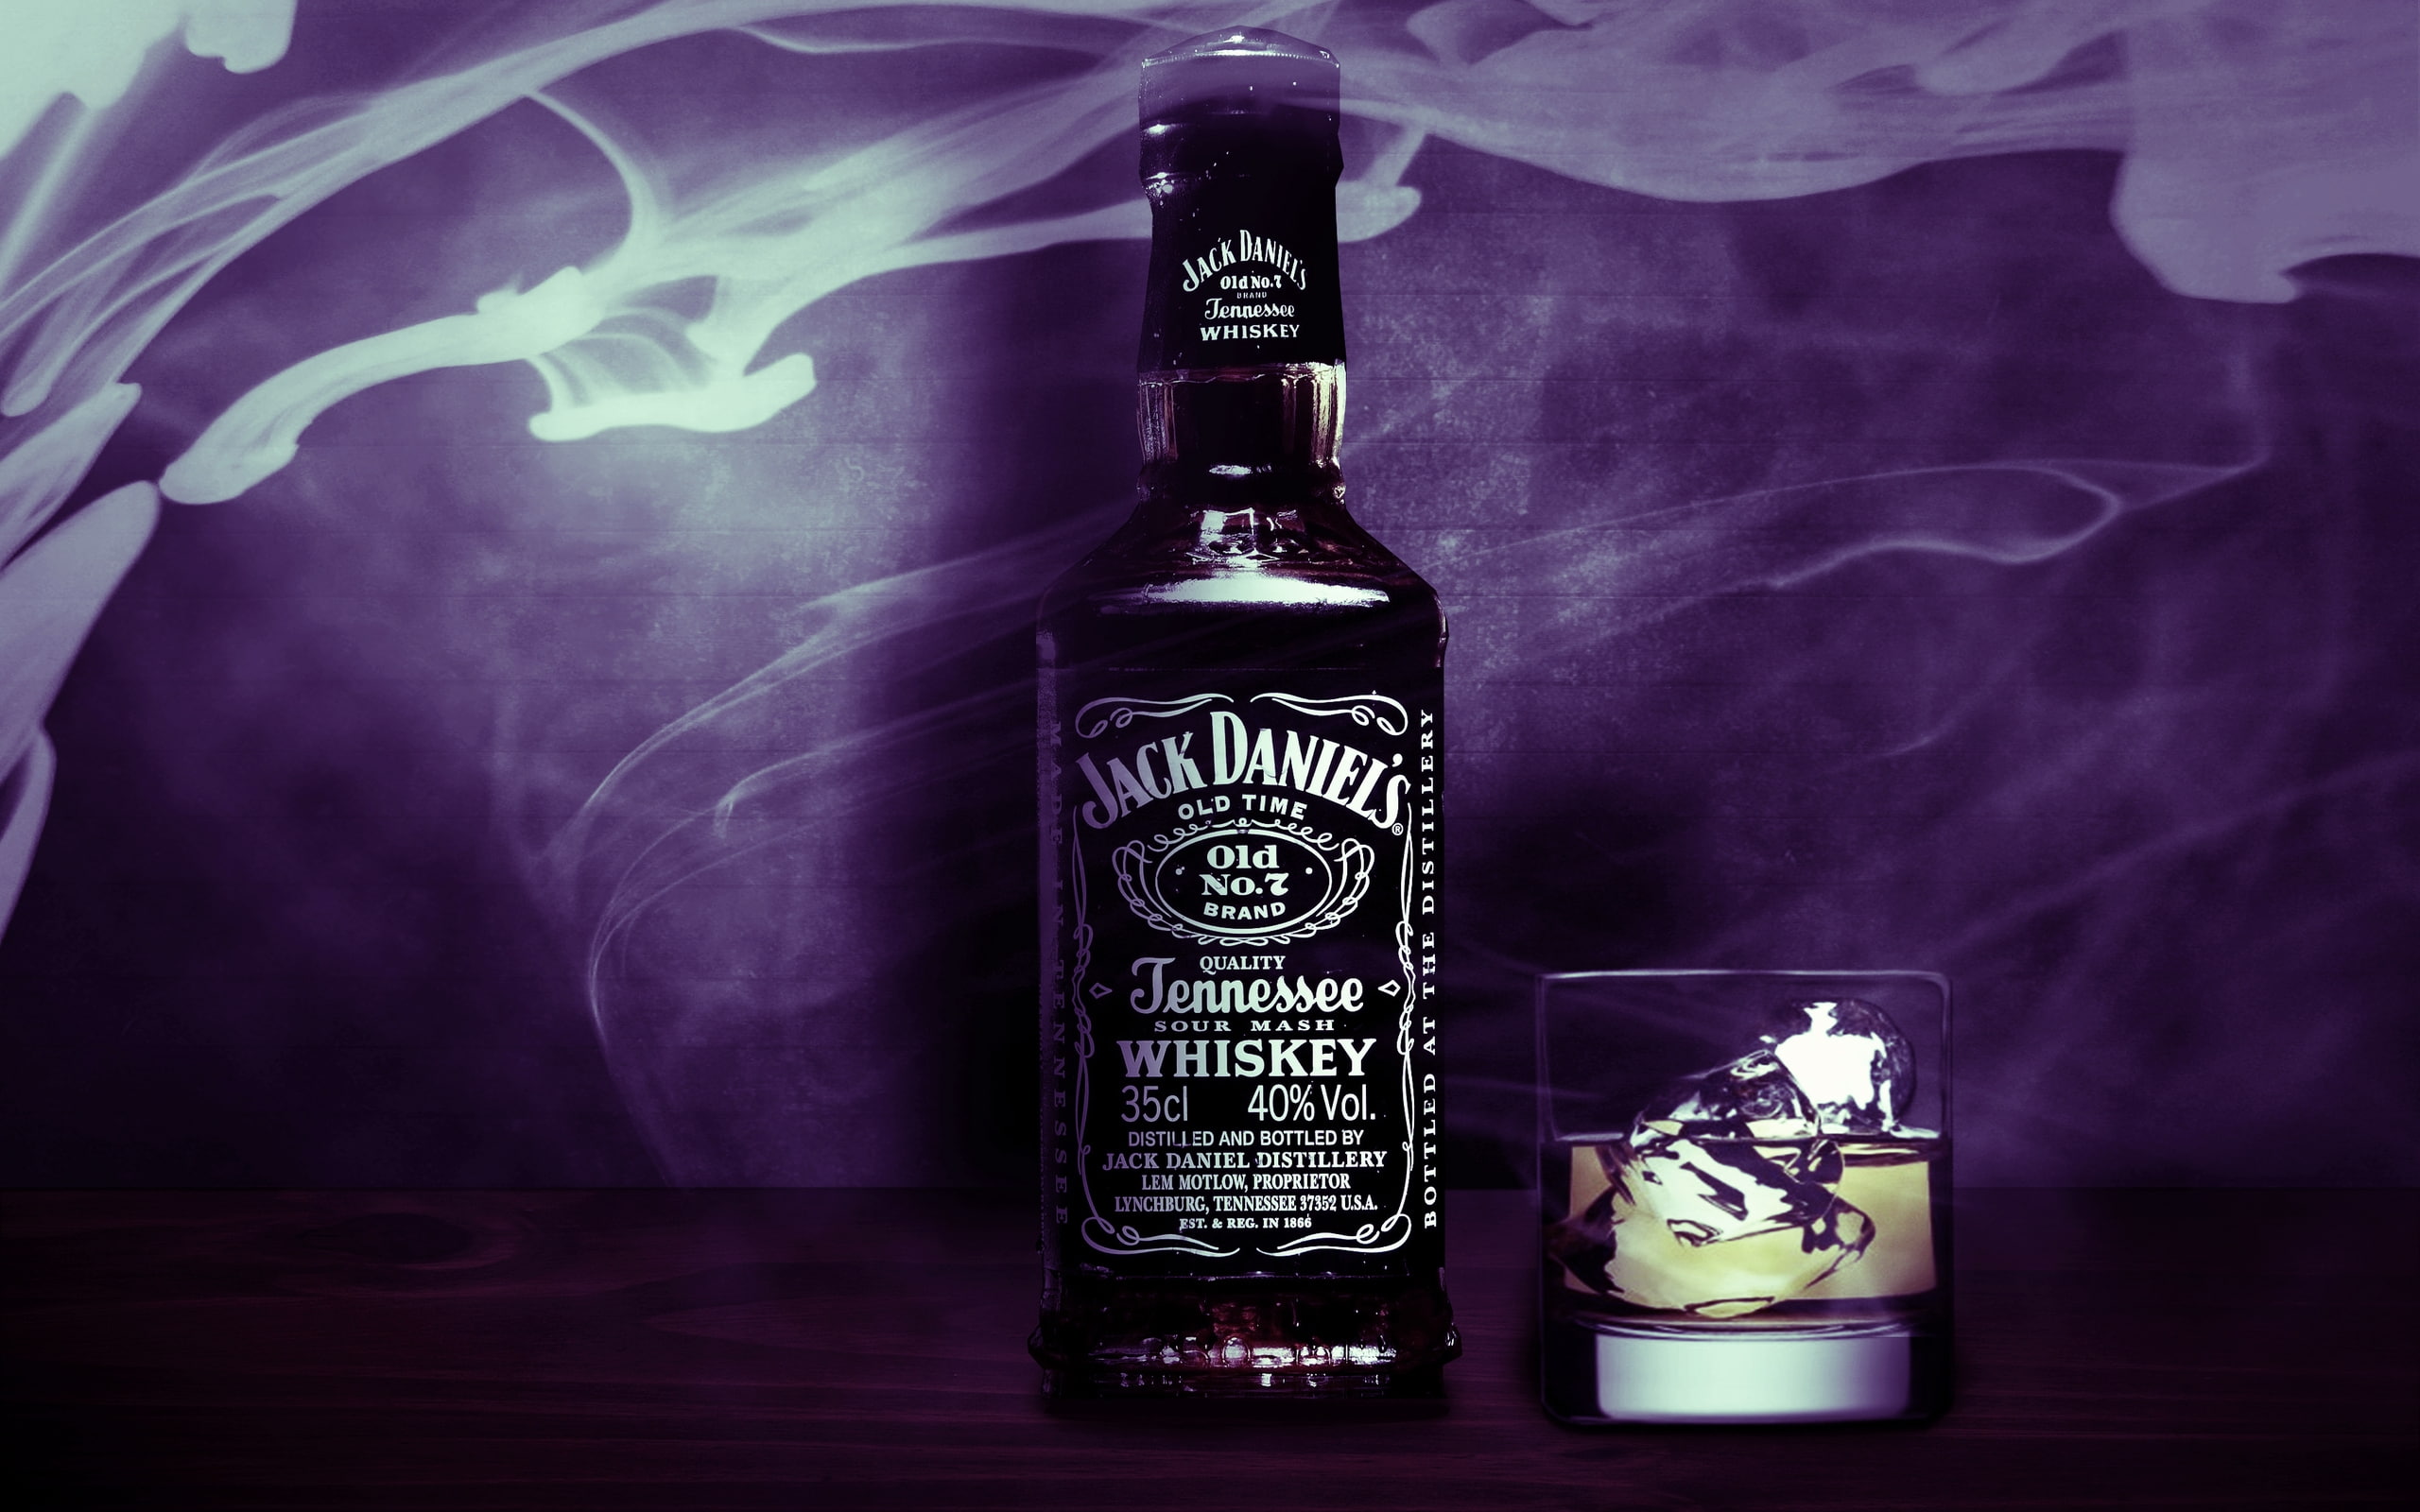 Jack Daniels, jack daniel's old tennessee whiskey, alchool, bottle